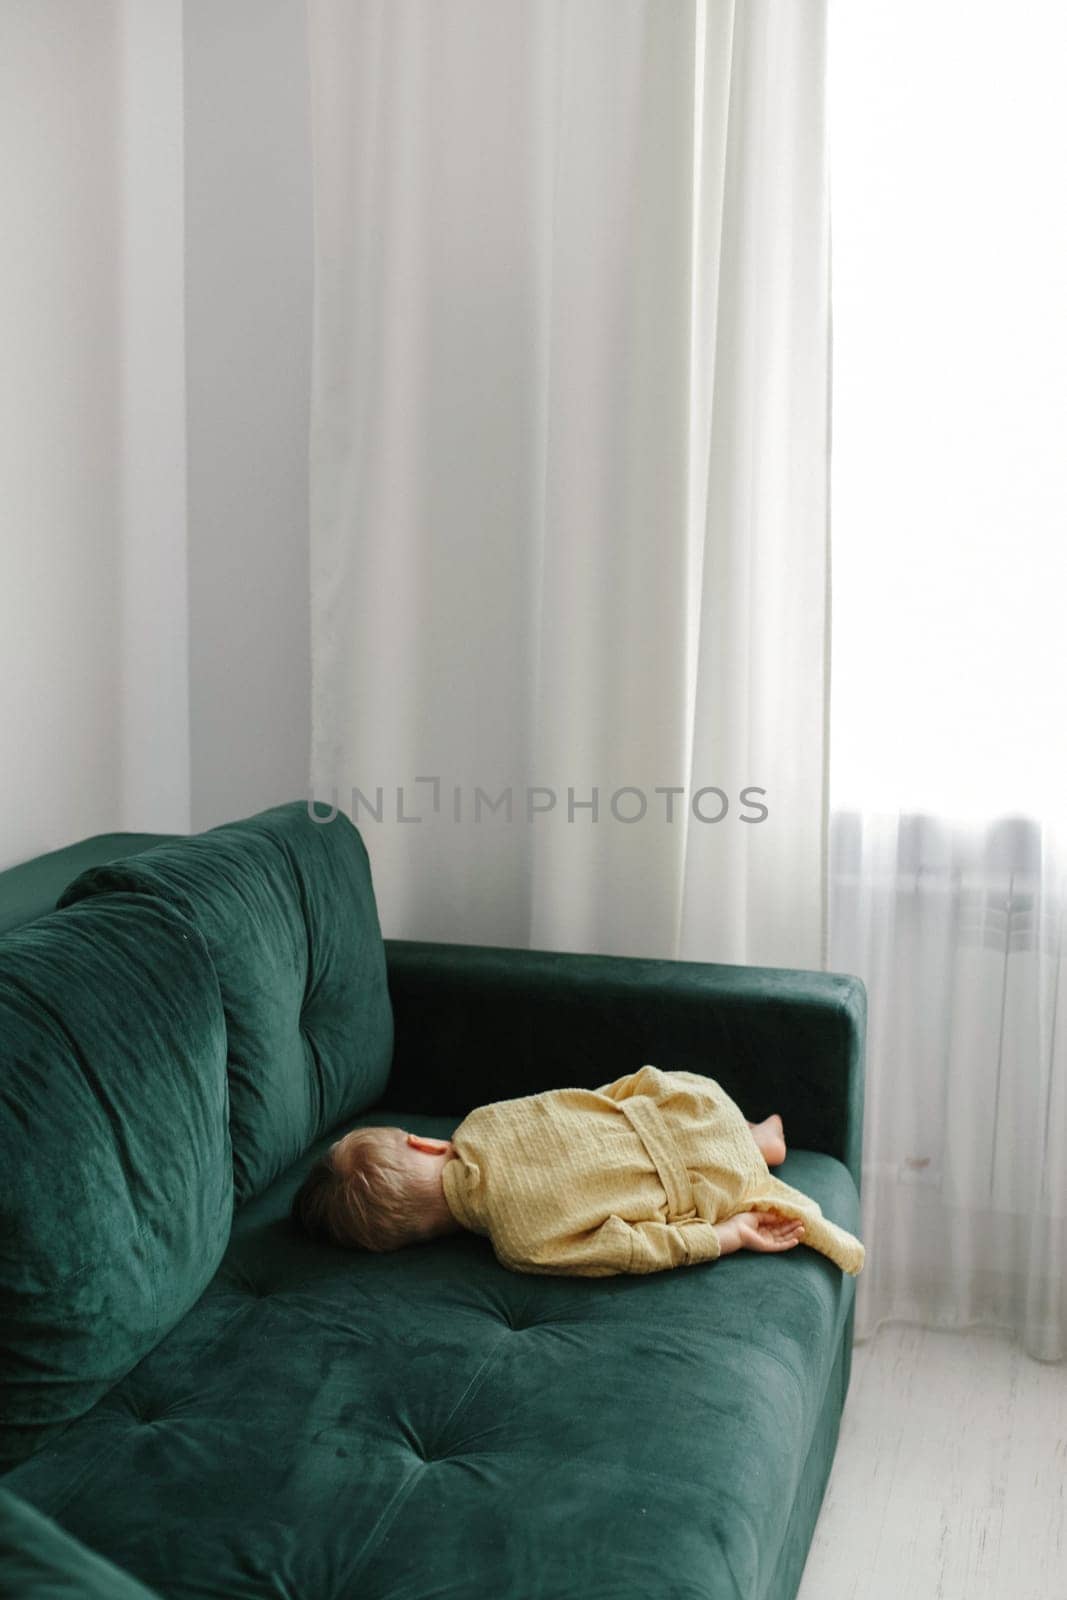 A little tired boy in a bathrobe fell asleep on the sofa.